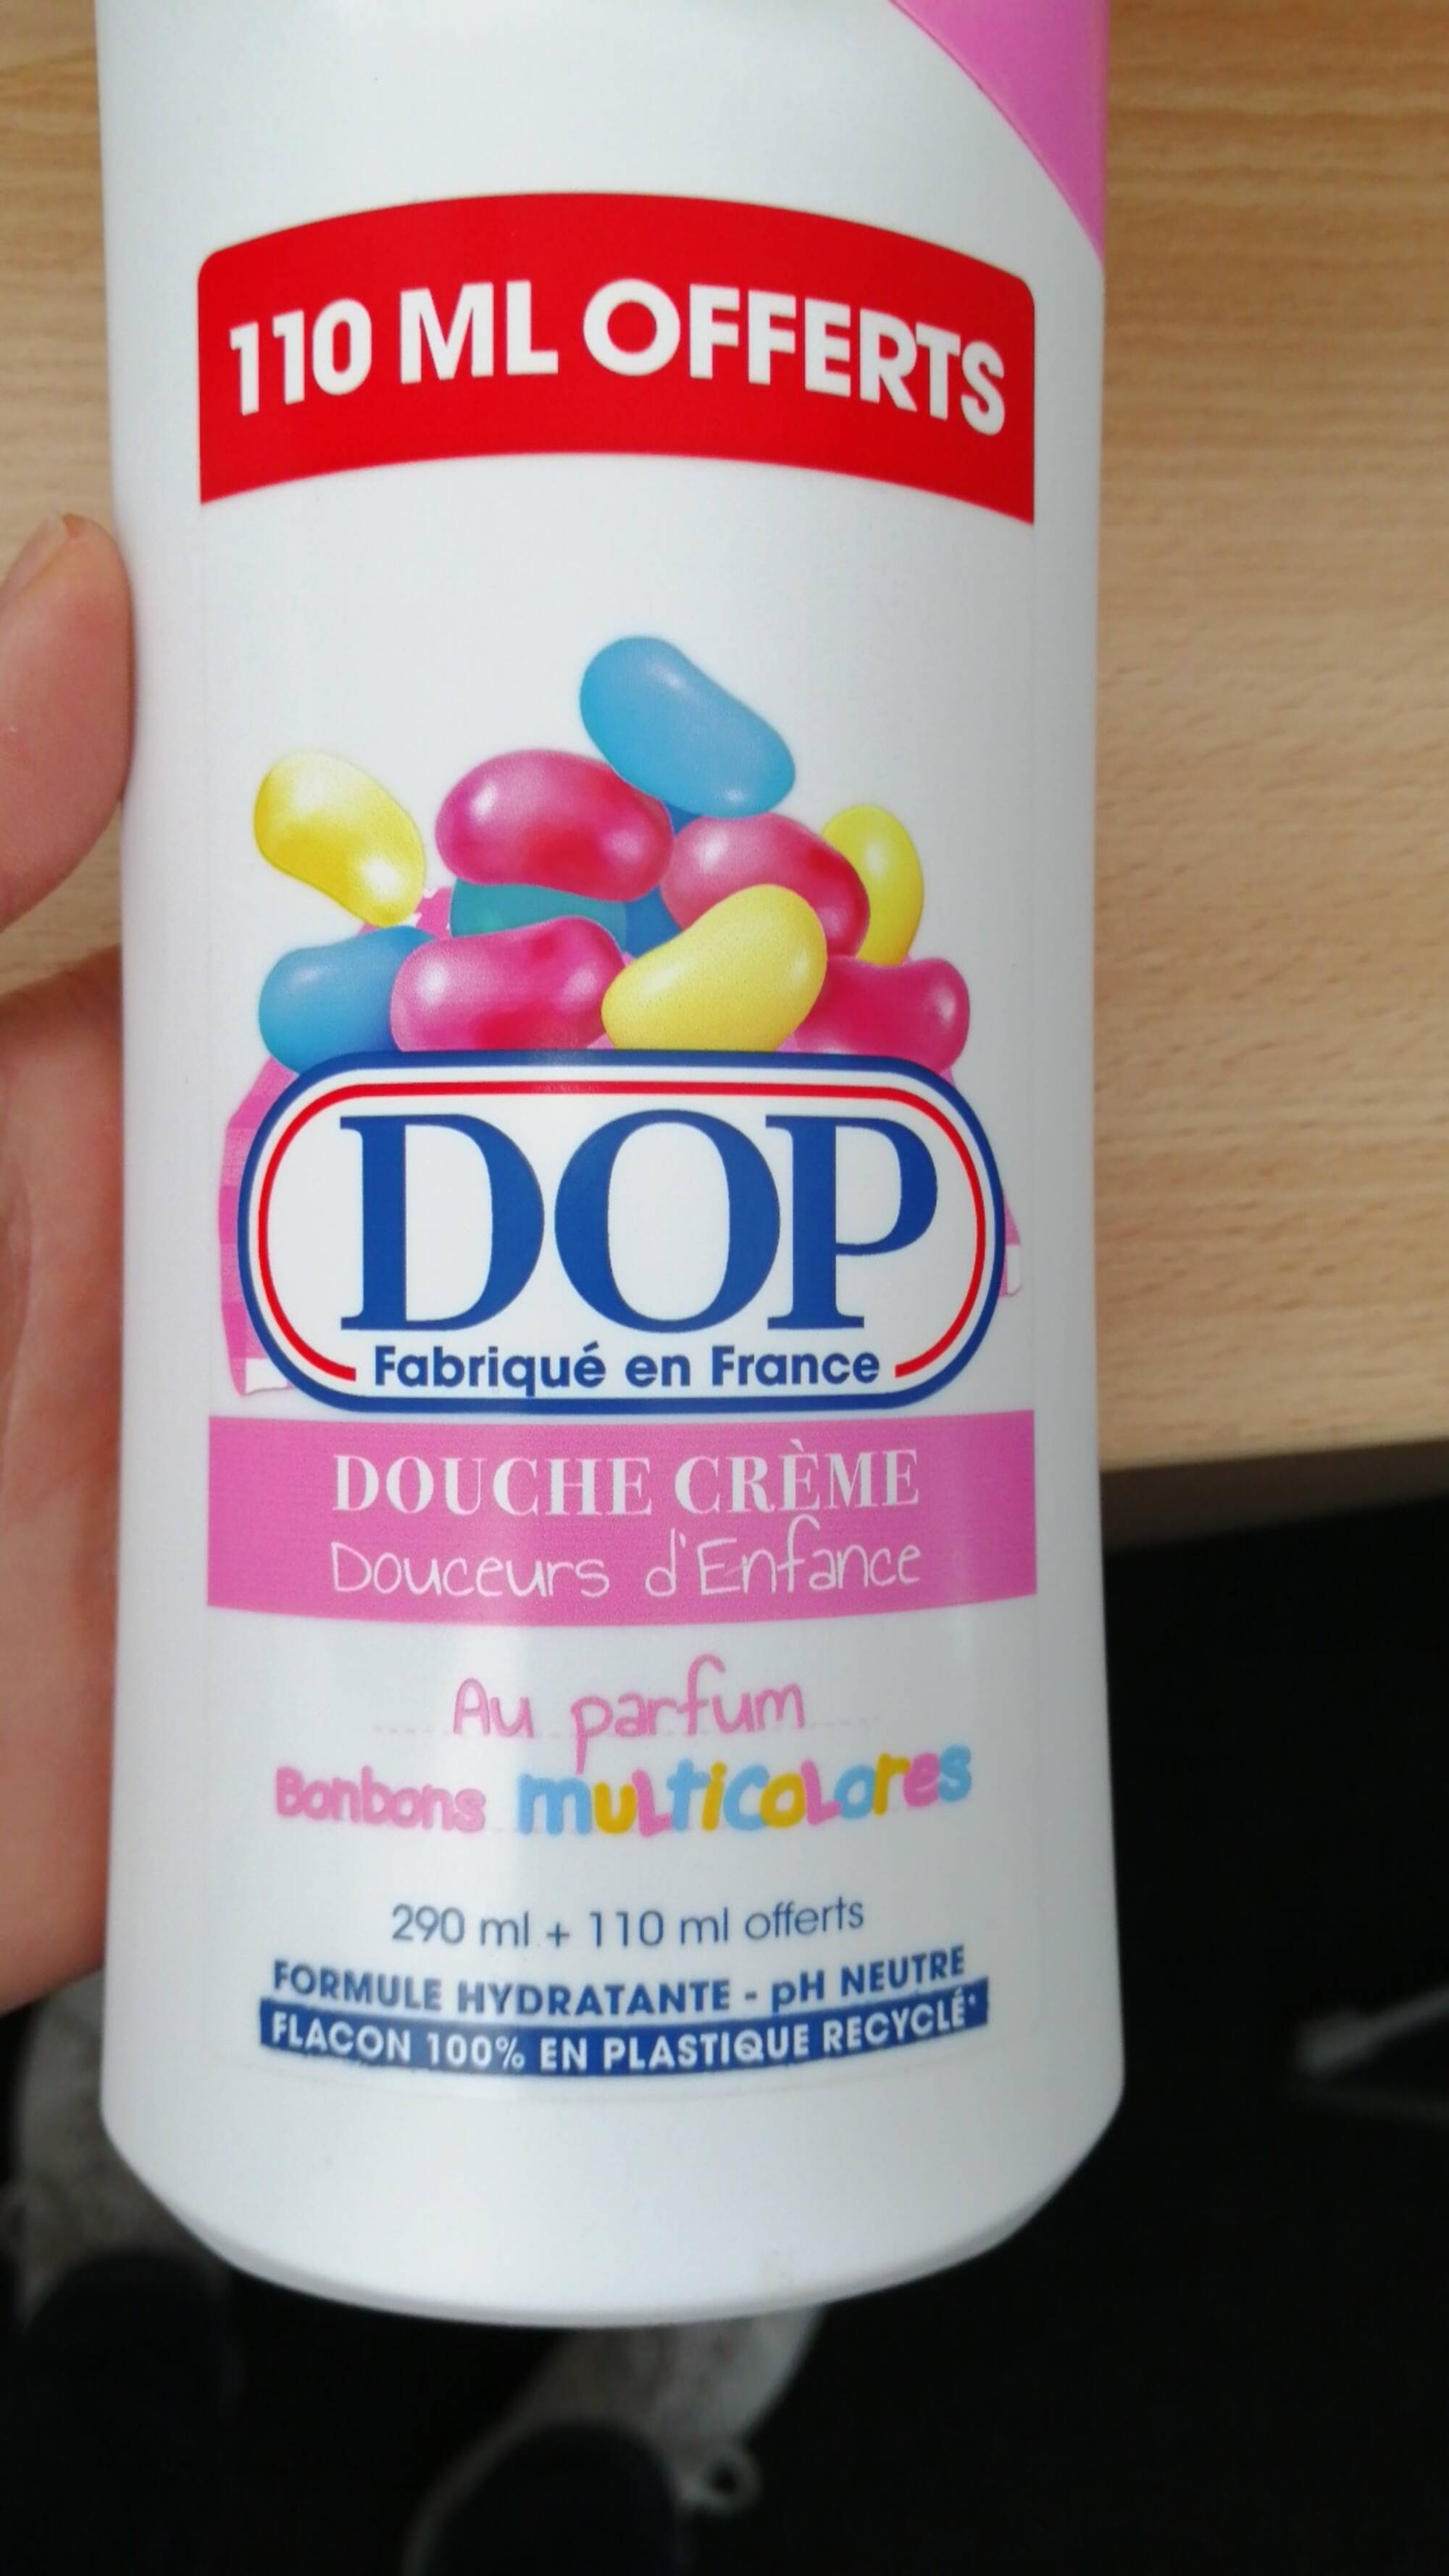 DOP - Douche crème bonbons multicolores